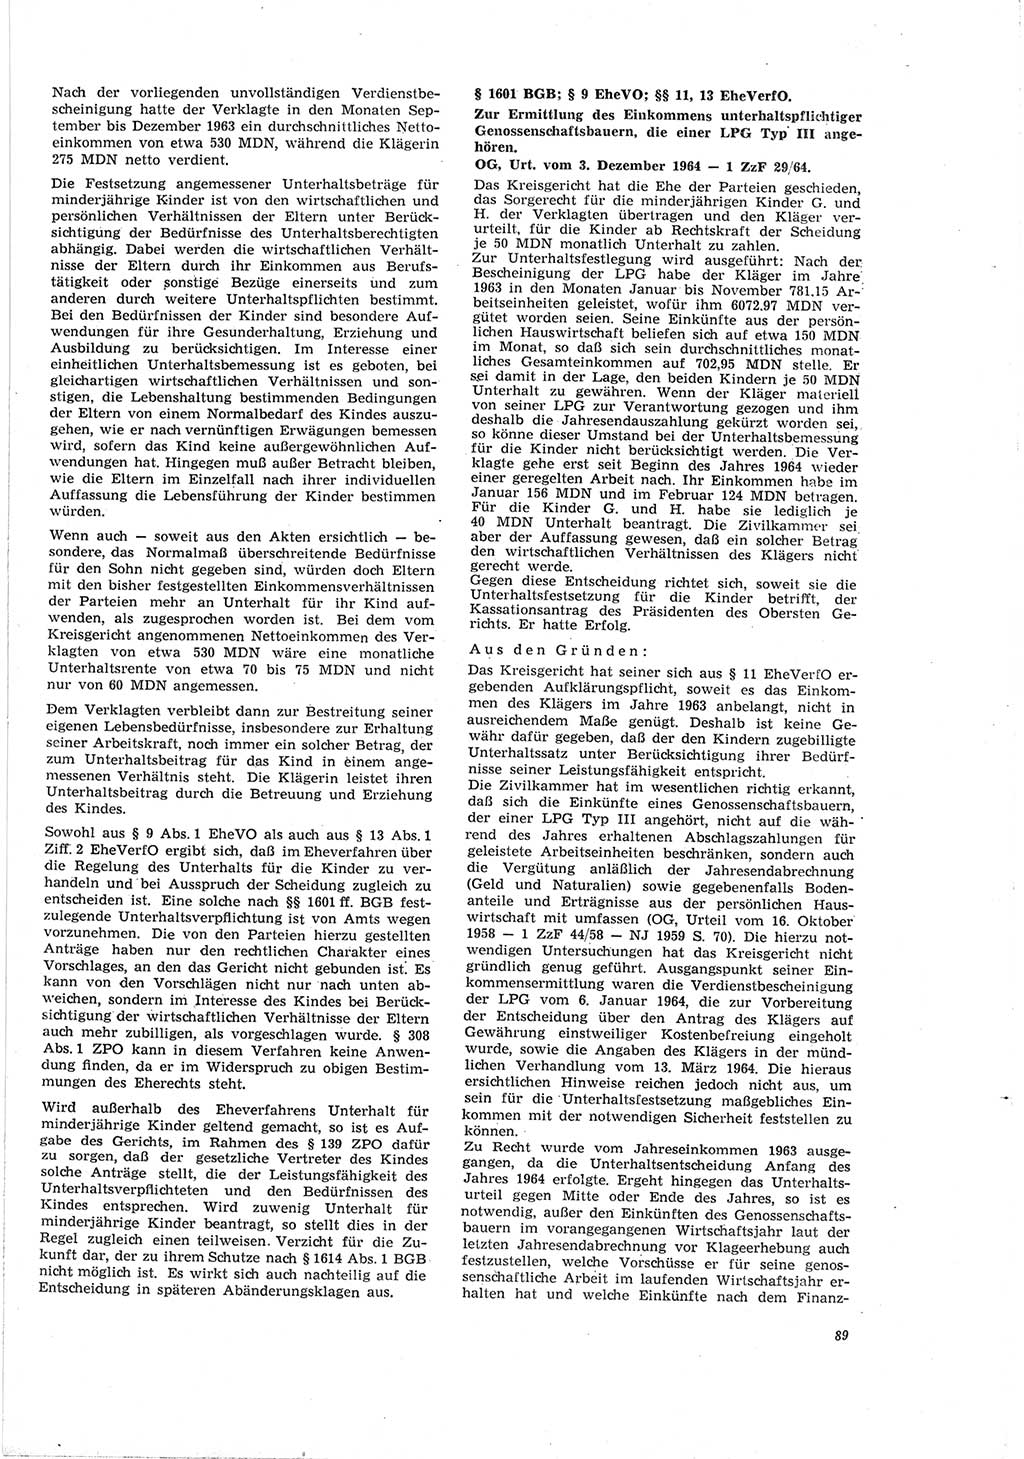 Neue Justiz (NJ), Zeitschrift für Recht und Rechtswissenschaft [Deutsche Demokratische Republik (DDR)], 19. Jahrgang 1965, Seite 89 (NJ DDR 1965, S. 89)